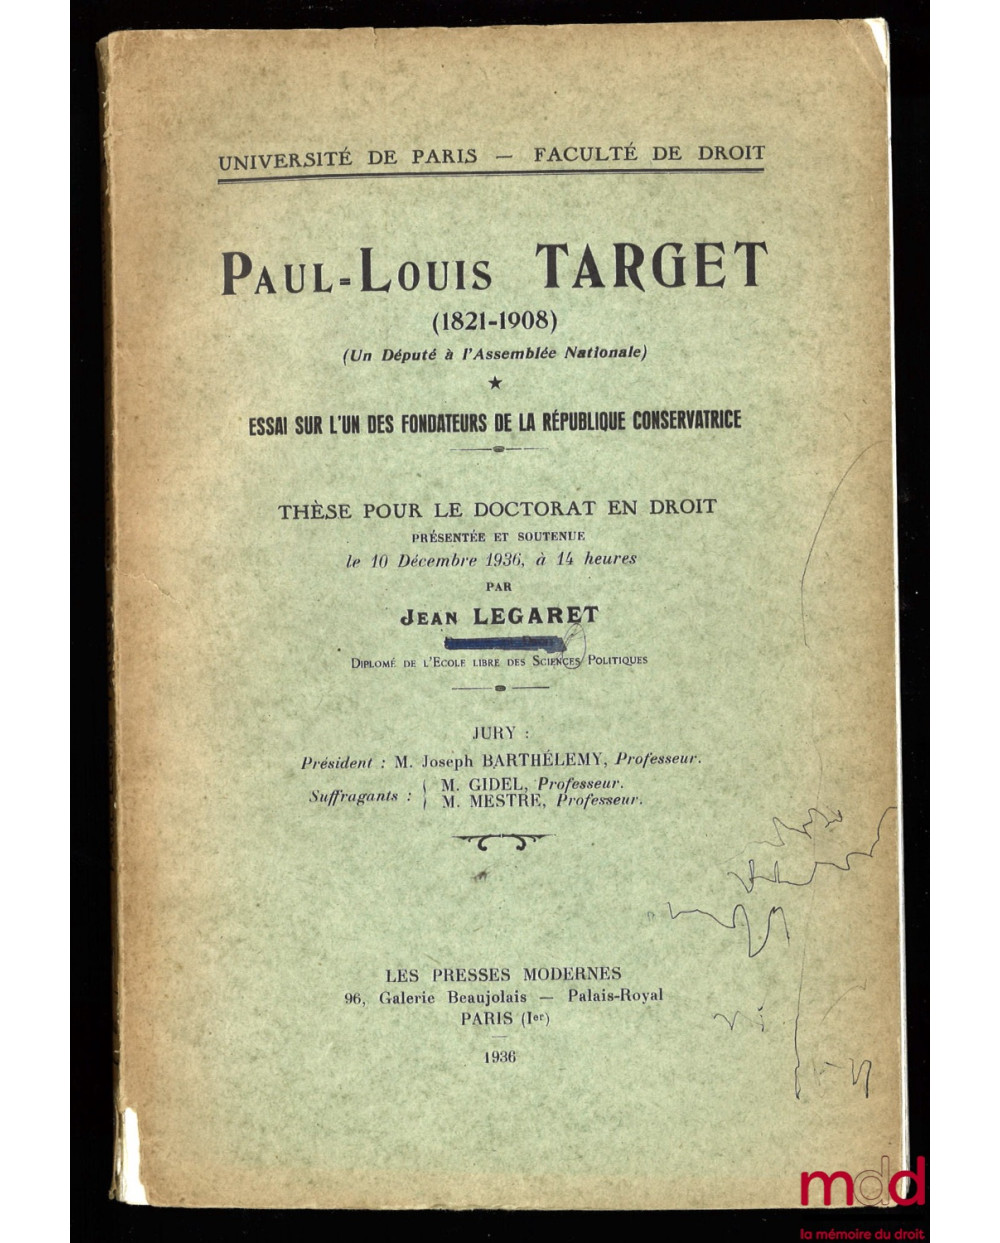 PAUL-LOUIS TARGET (1821-1908) (Un Député à l’Assemblée nationale). ESSAI SUR L’UN DES FONDATEURS DE LA RÉPUBLIQUE CONSERVATRICE